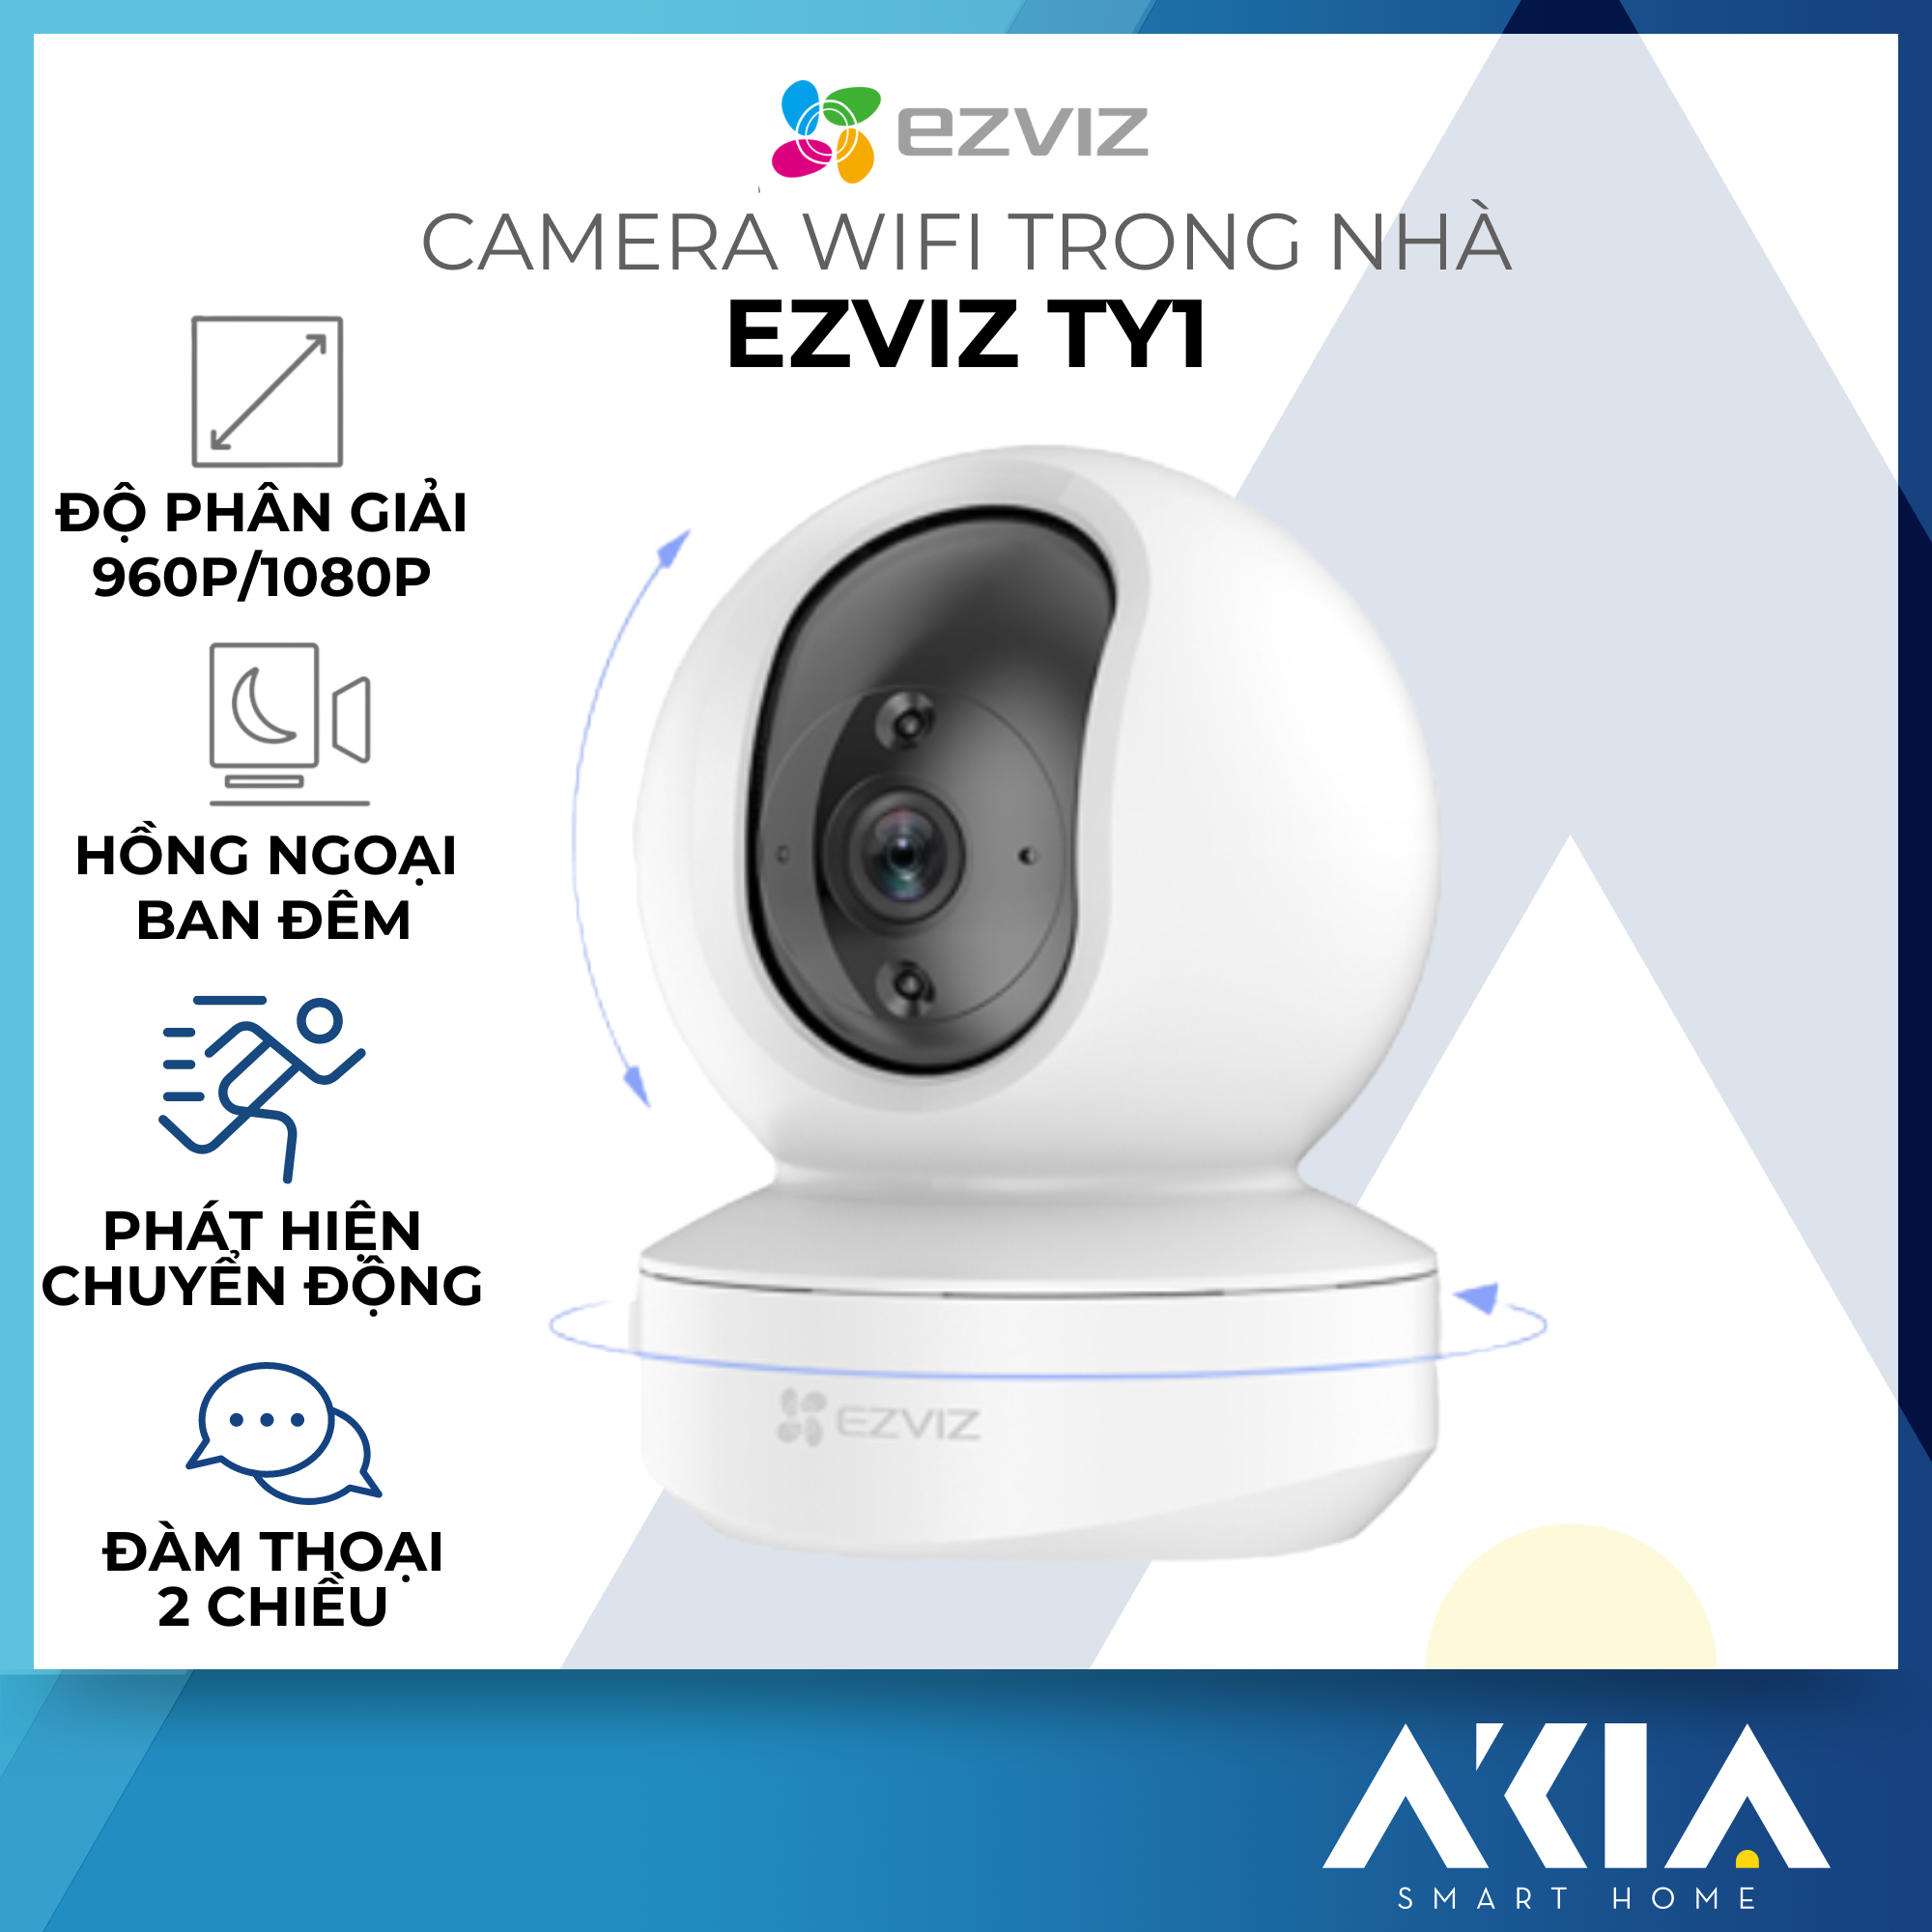 Camera Wifi trong nhà Ezviz TY1 - Phát hiện chuyển động, đàm thoại 2 chiều, có hồng ngoại ban đêm, tầm nhìn ban đêm thông minh 10 mét, độ phân giải 980P/1080P, chuẩn nén H624 - Hàng chính hãng